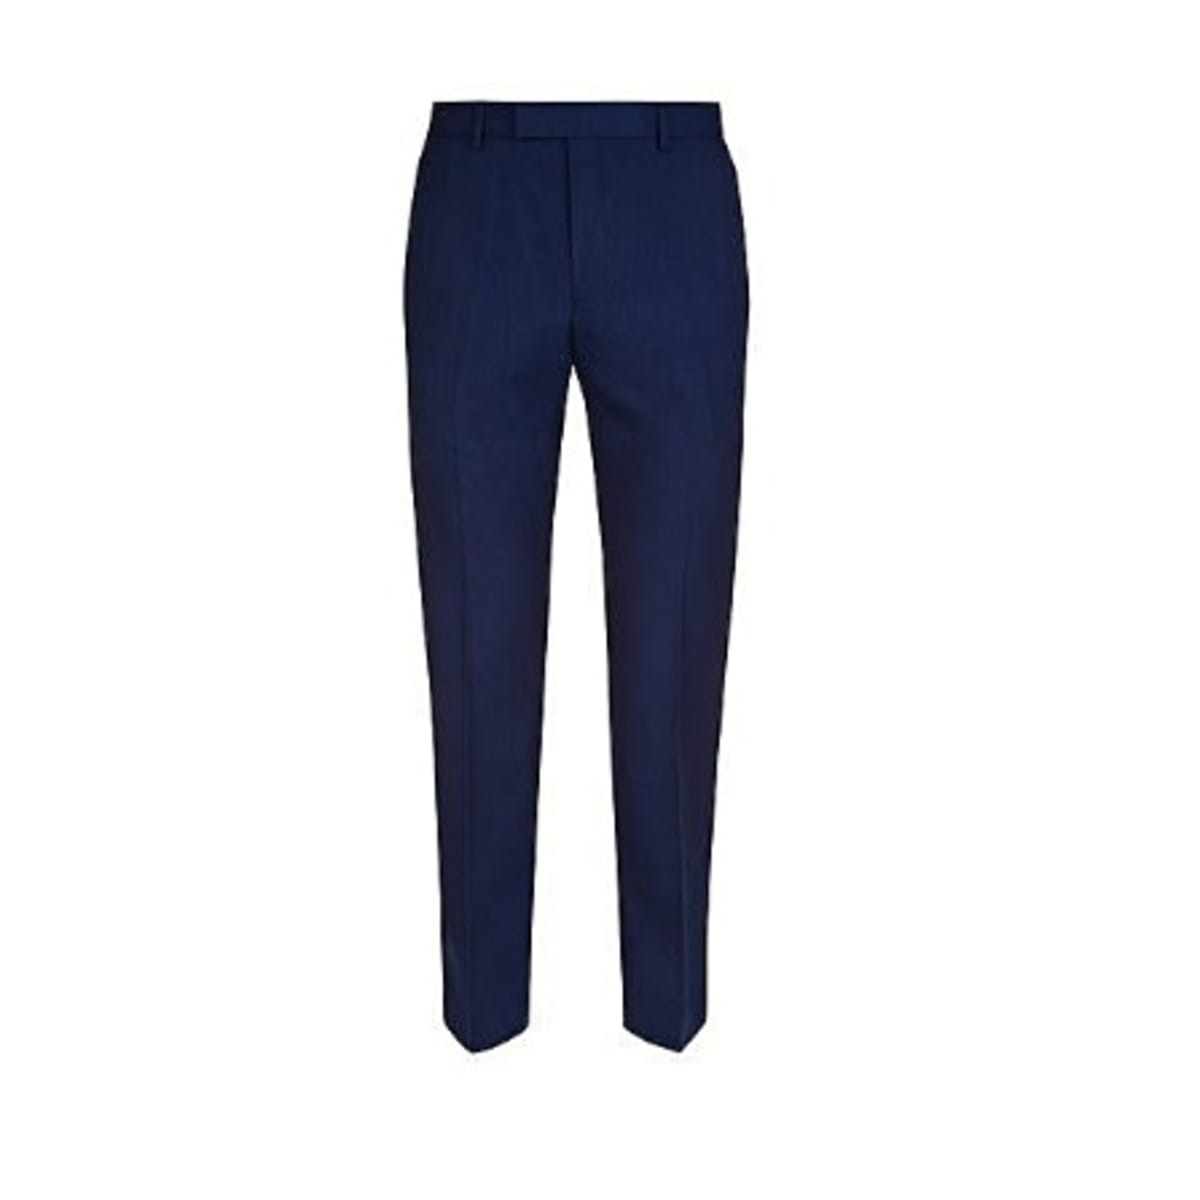 Men's Formal Trouser - Royal Blue | Konga Online Shopping